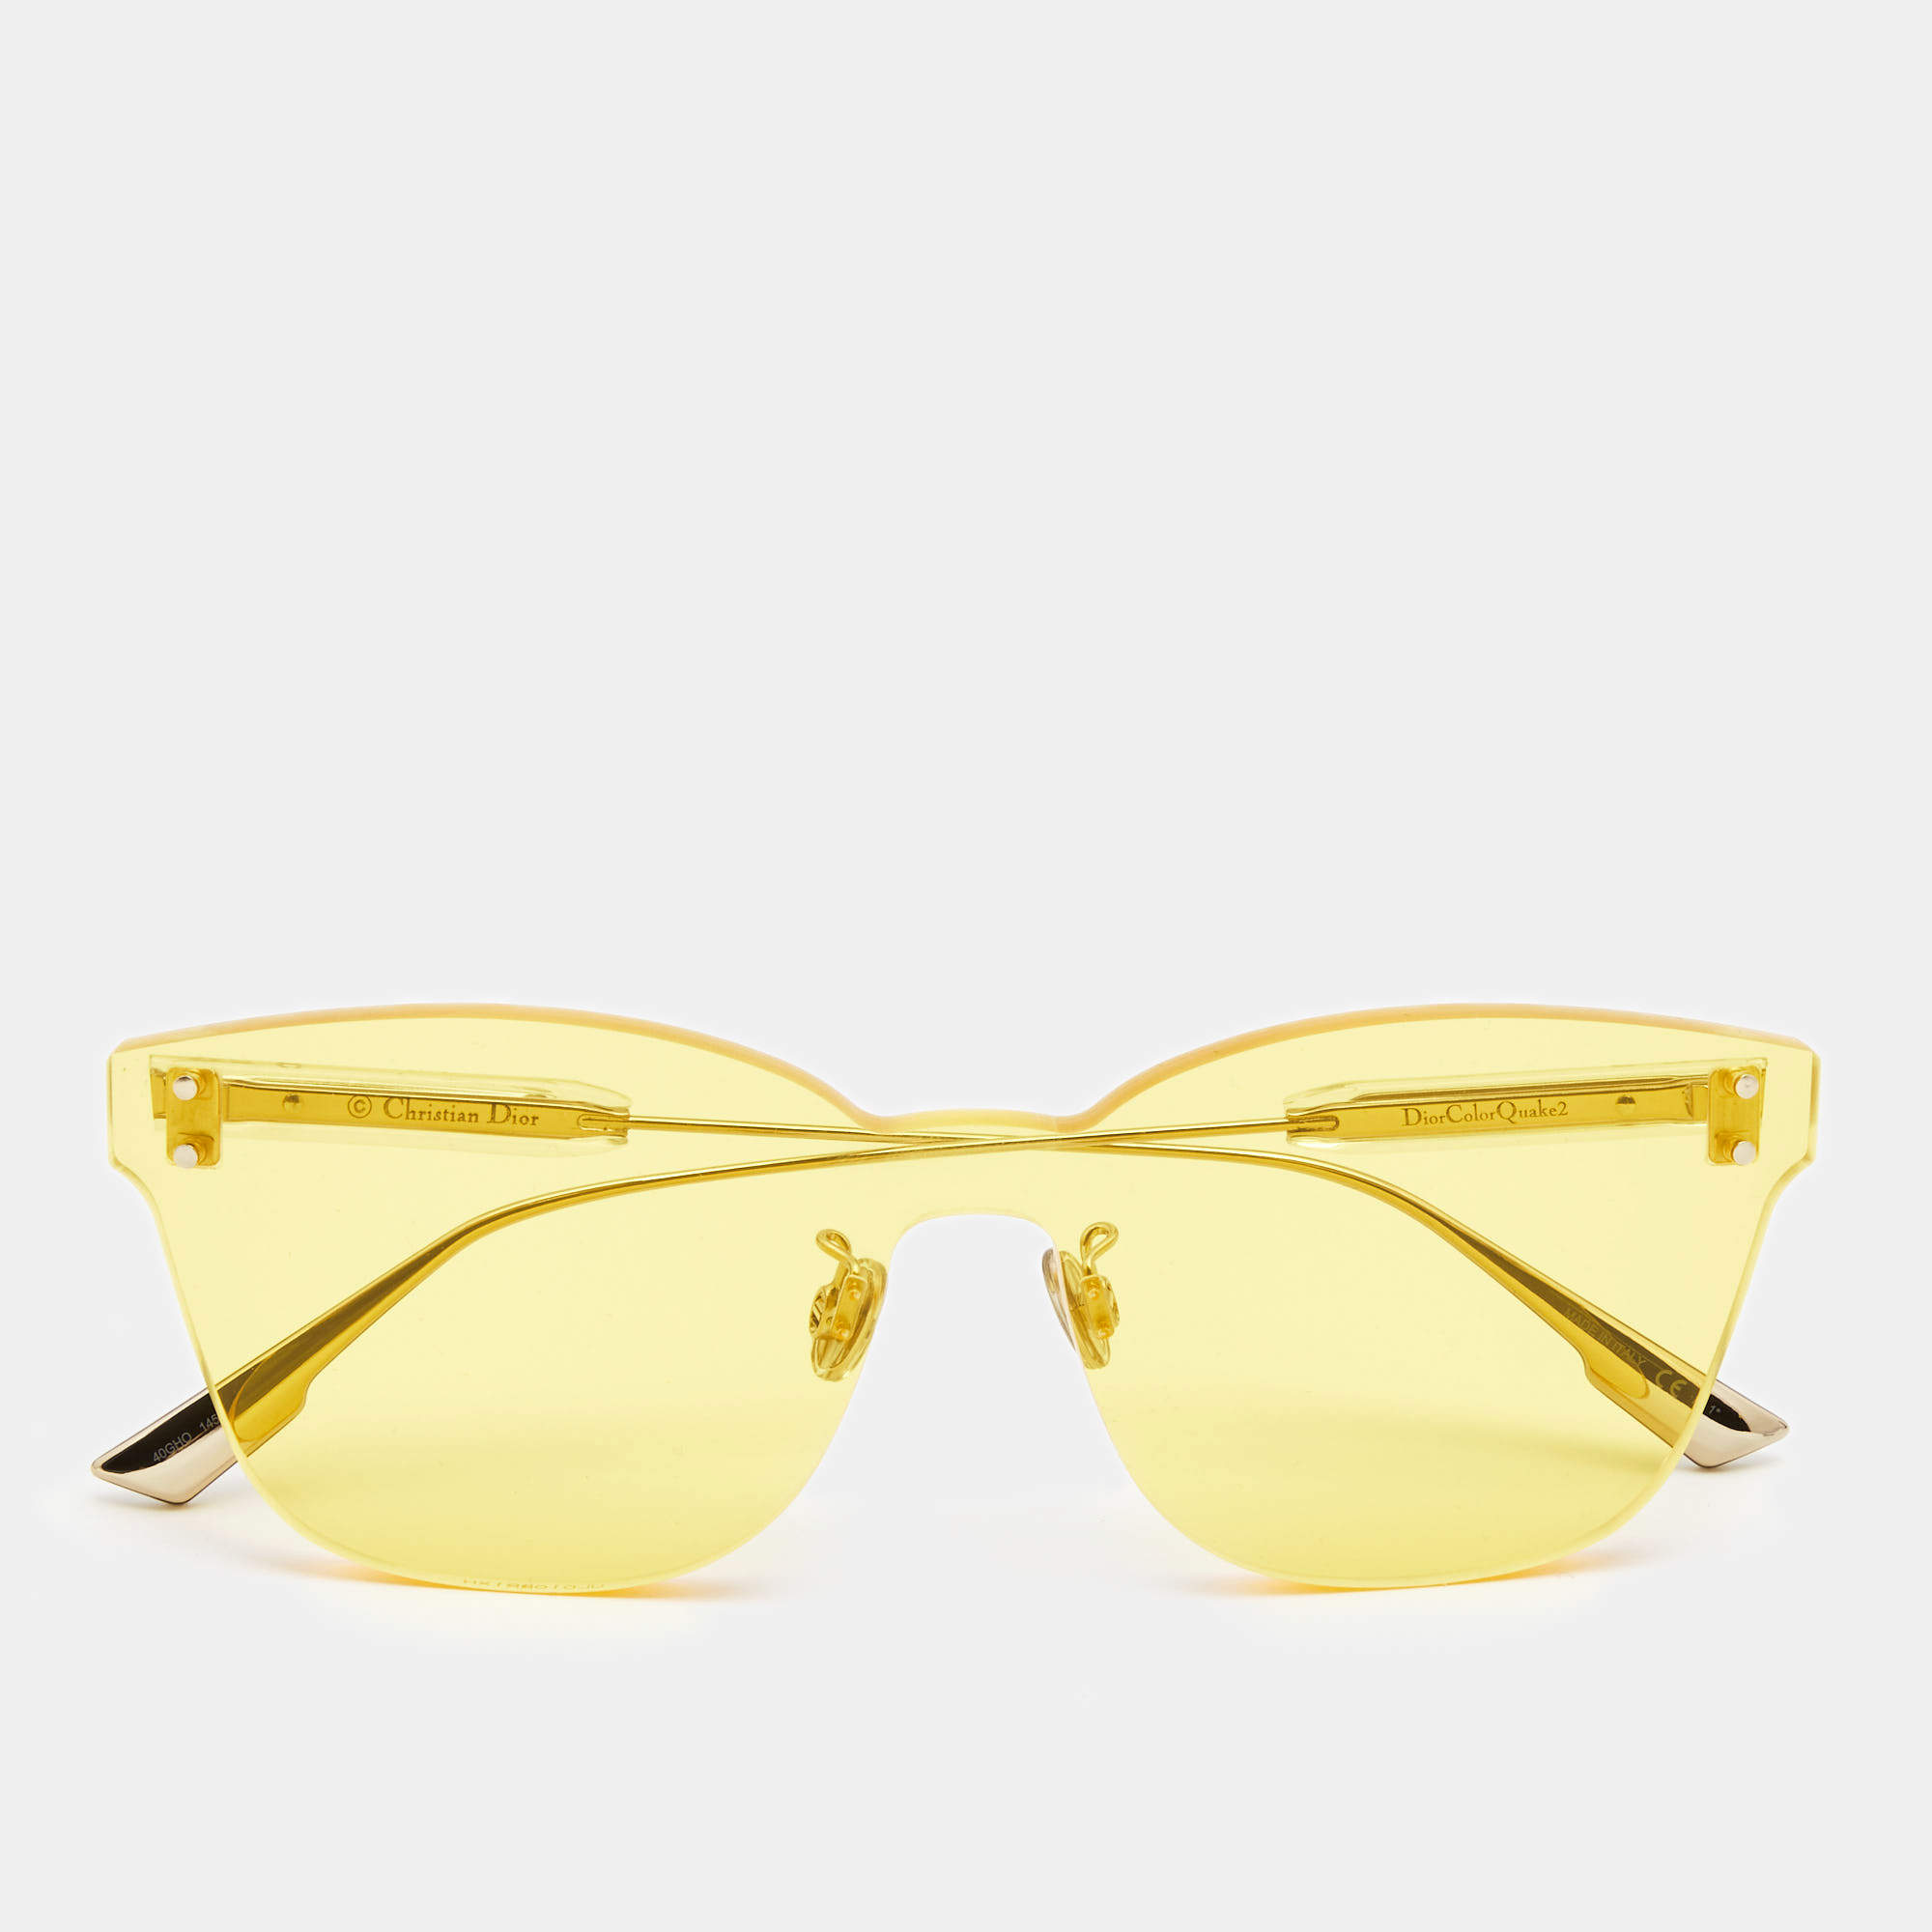 DIOR Diortag SU 56 Yellow  Yellow Sunglasses  Sunglass Hut Australia